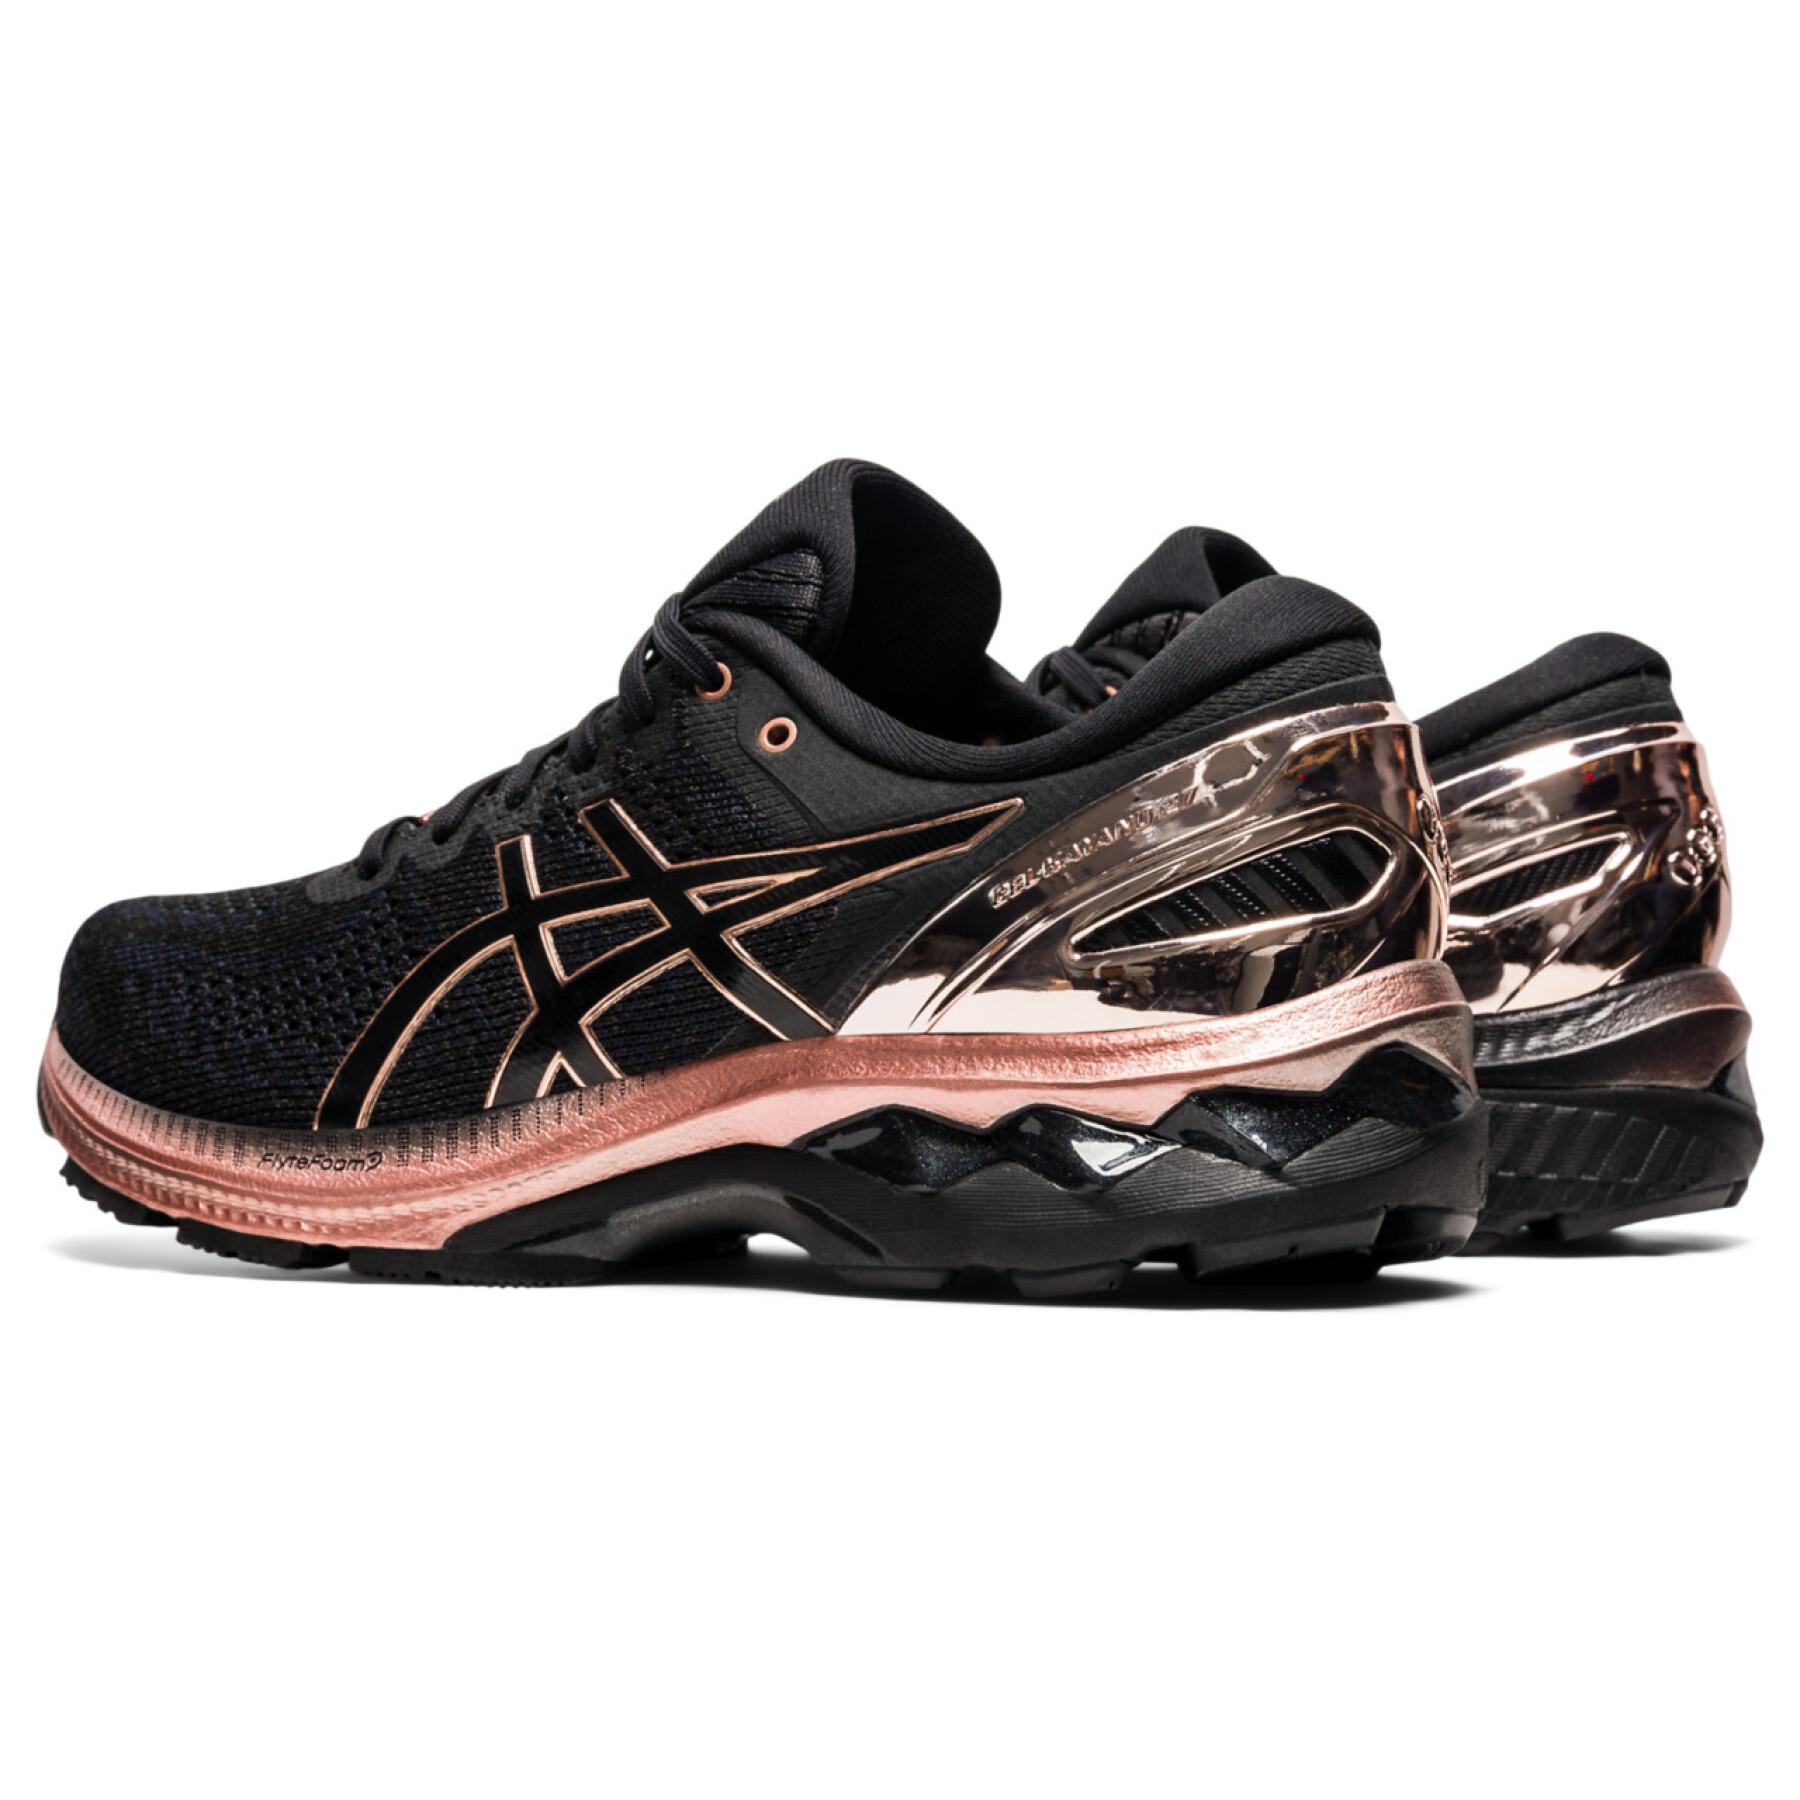 Women's shoes Asics Gel-Kayano 27 Platinum